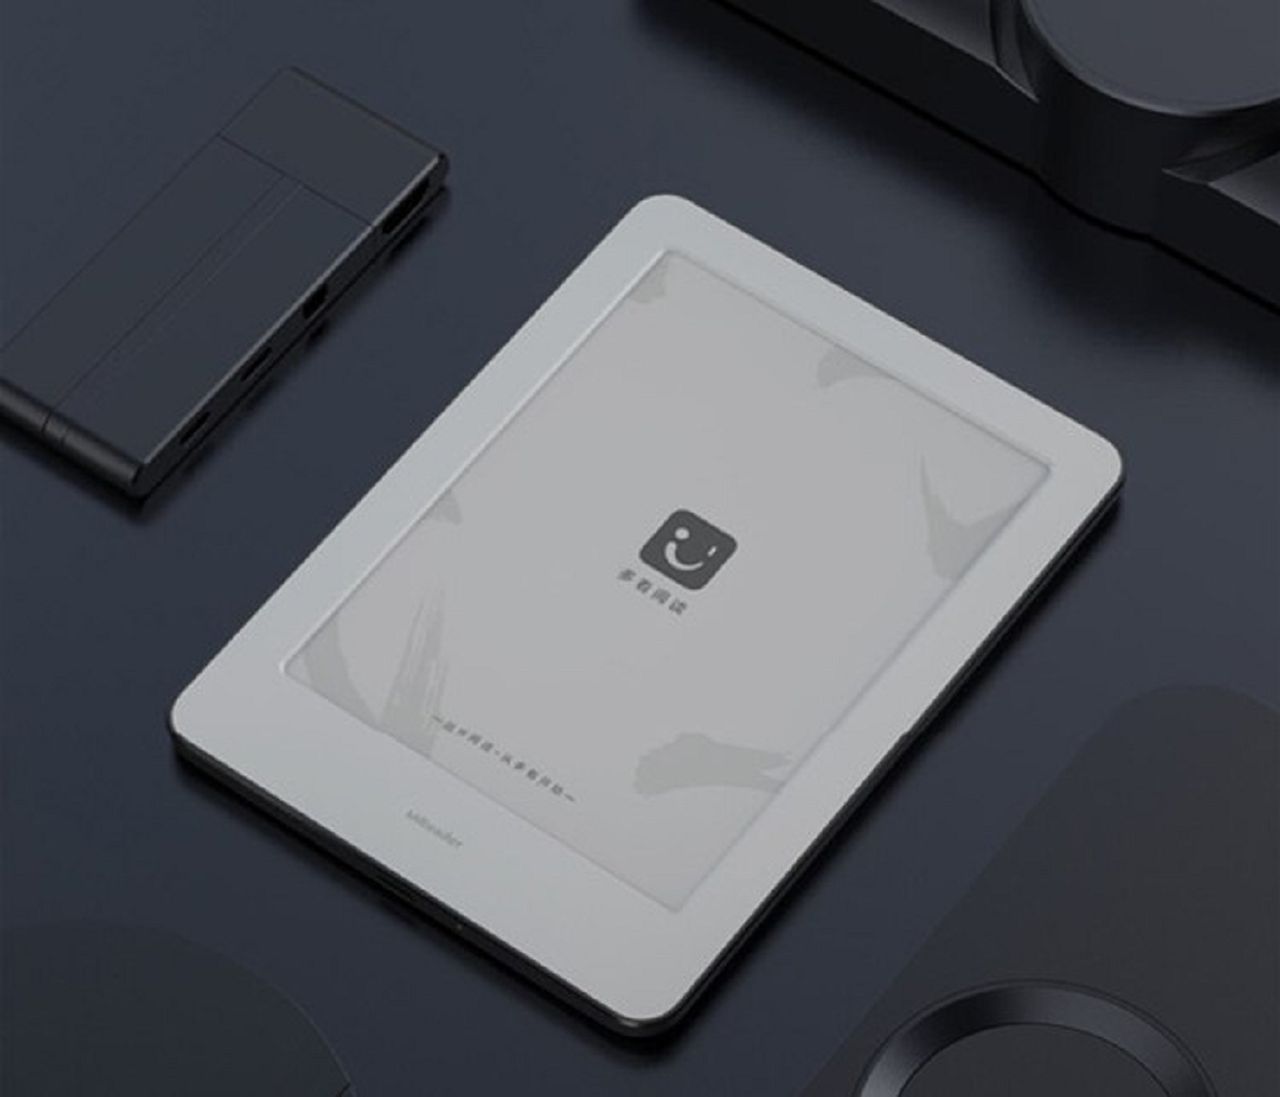 Xiaomi zaprezentowało czytnik ebooków. Znamy cenę i specyfikację urządzenia